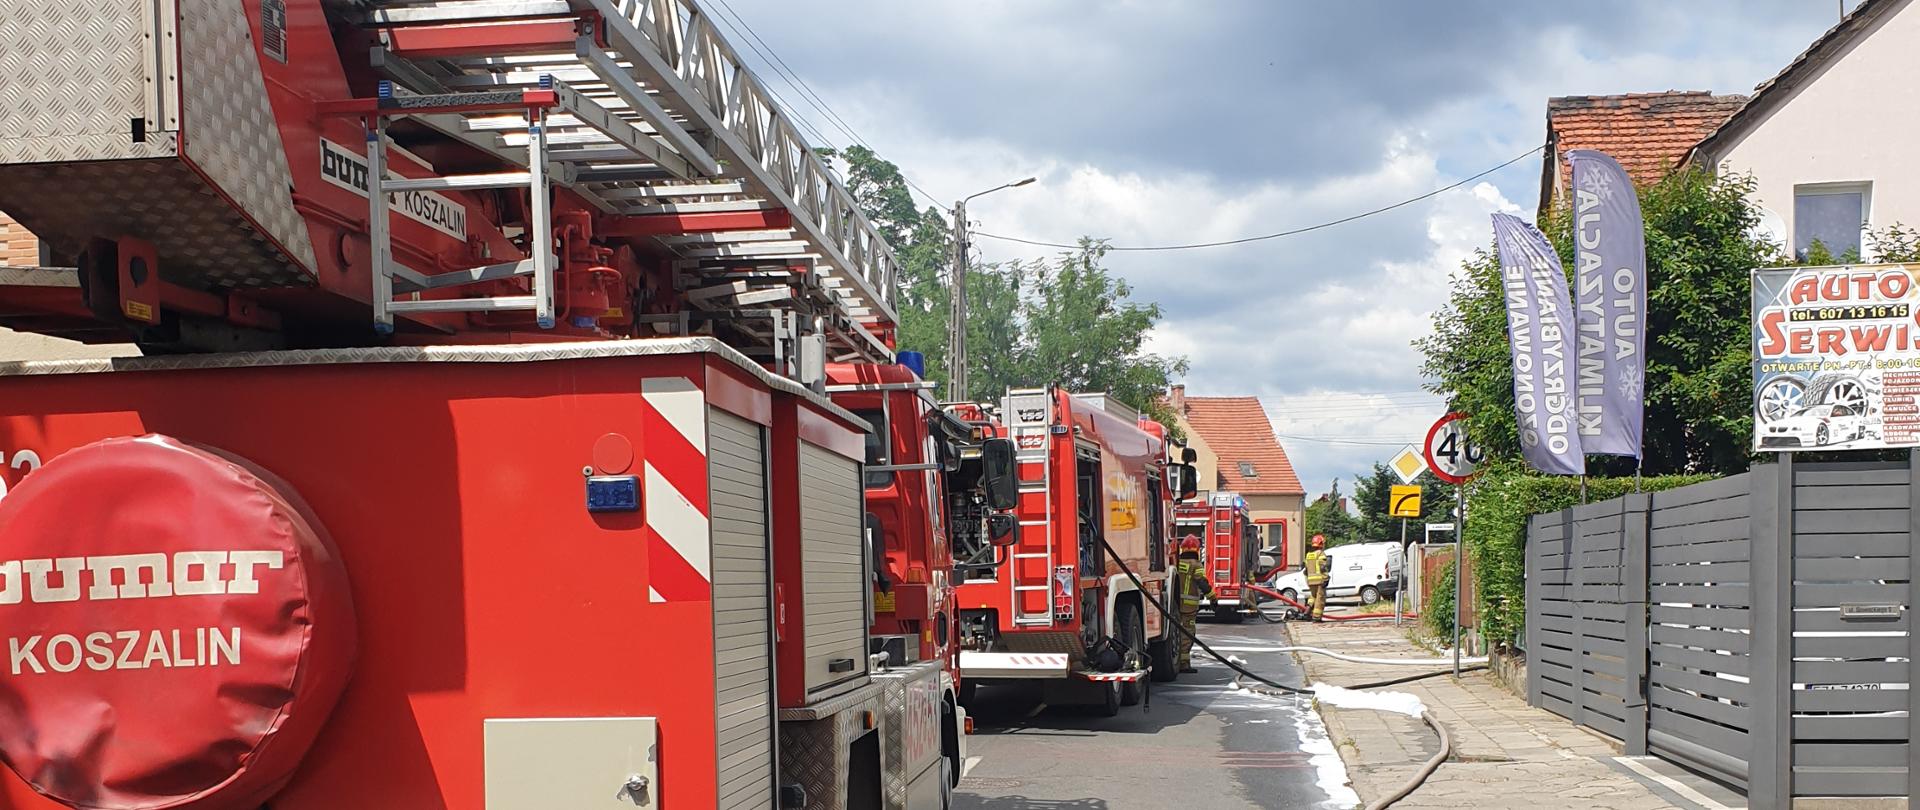 Ustawione na ulicy Słowackiego samochody straży pożarnej podczas pożaru budynku.